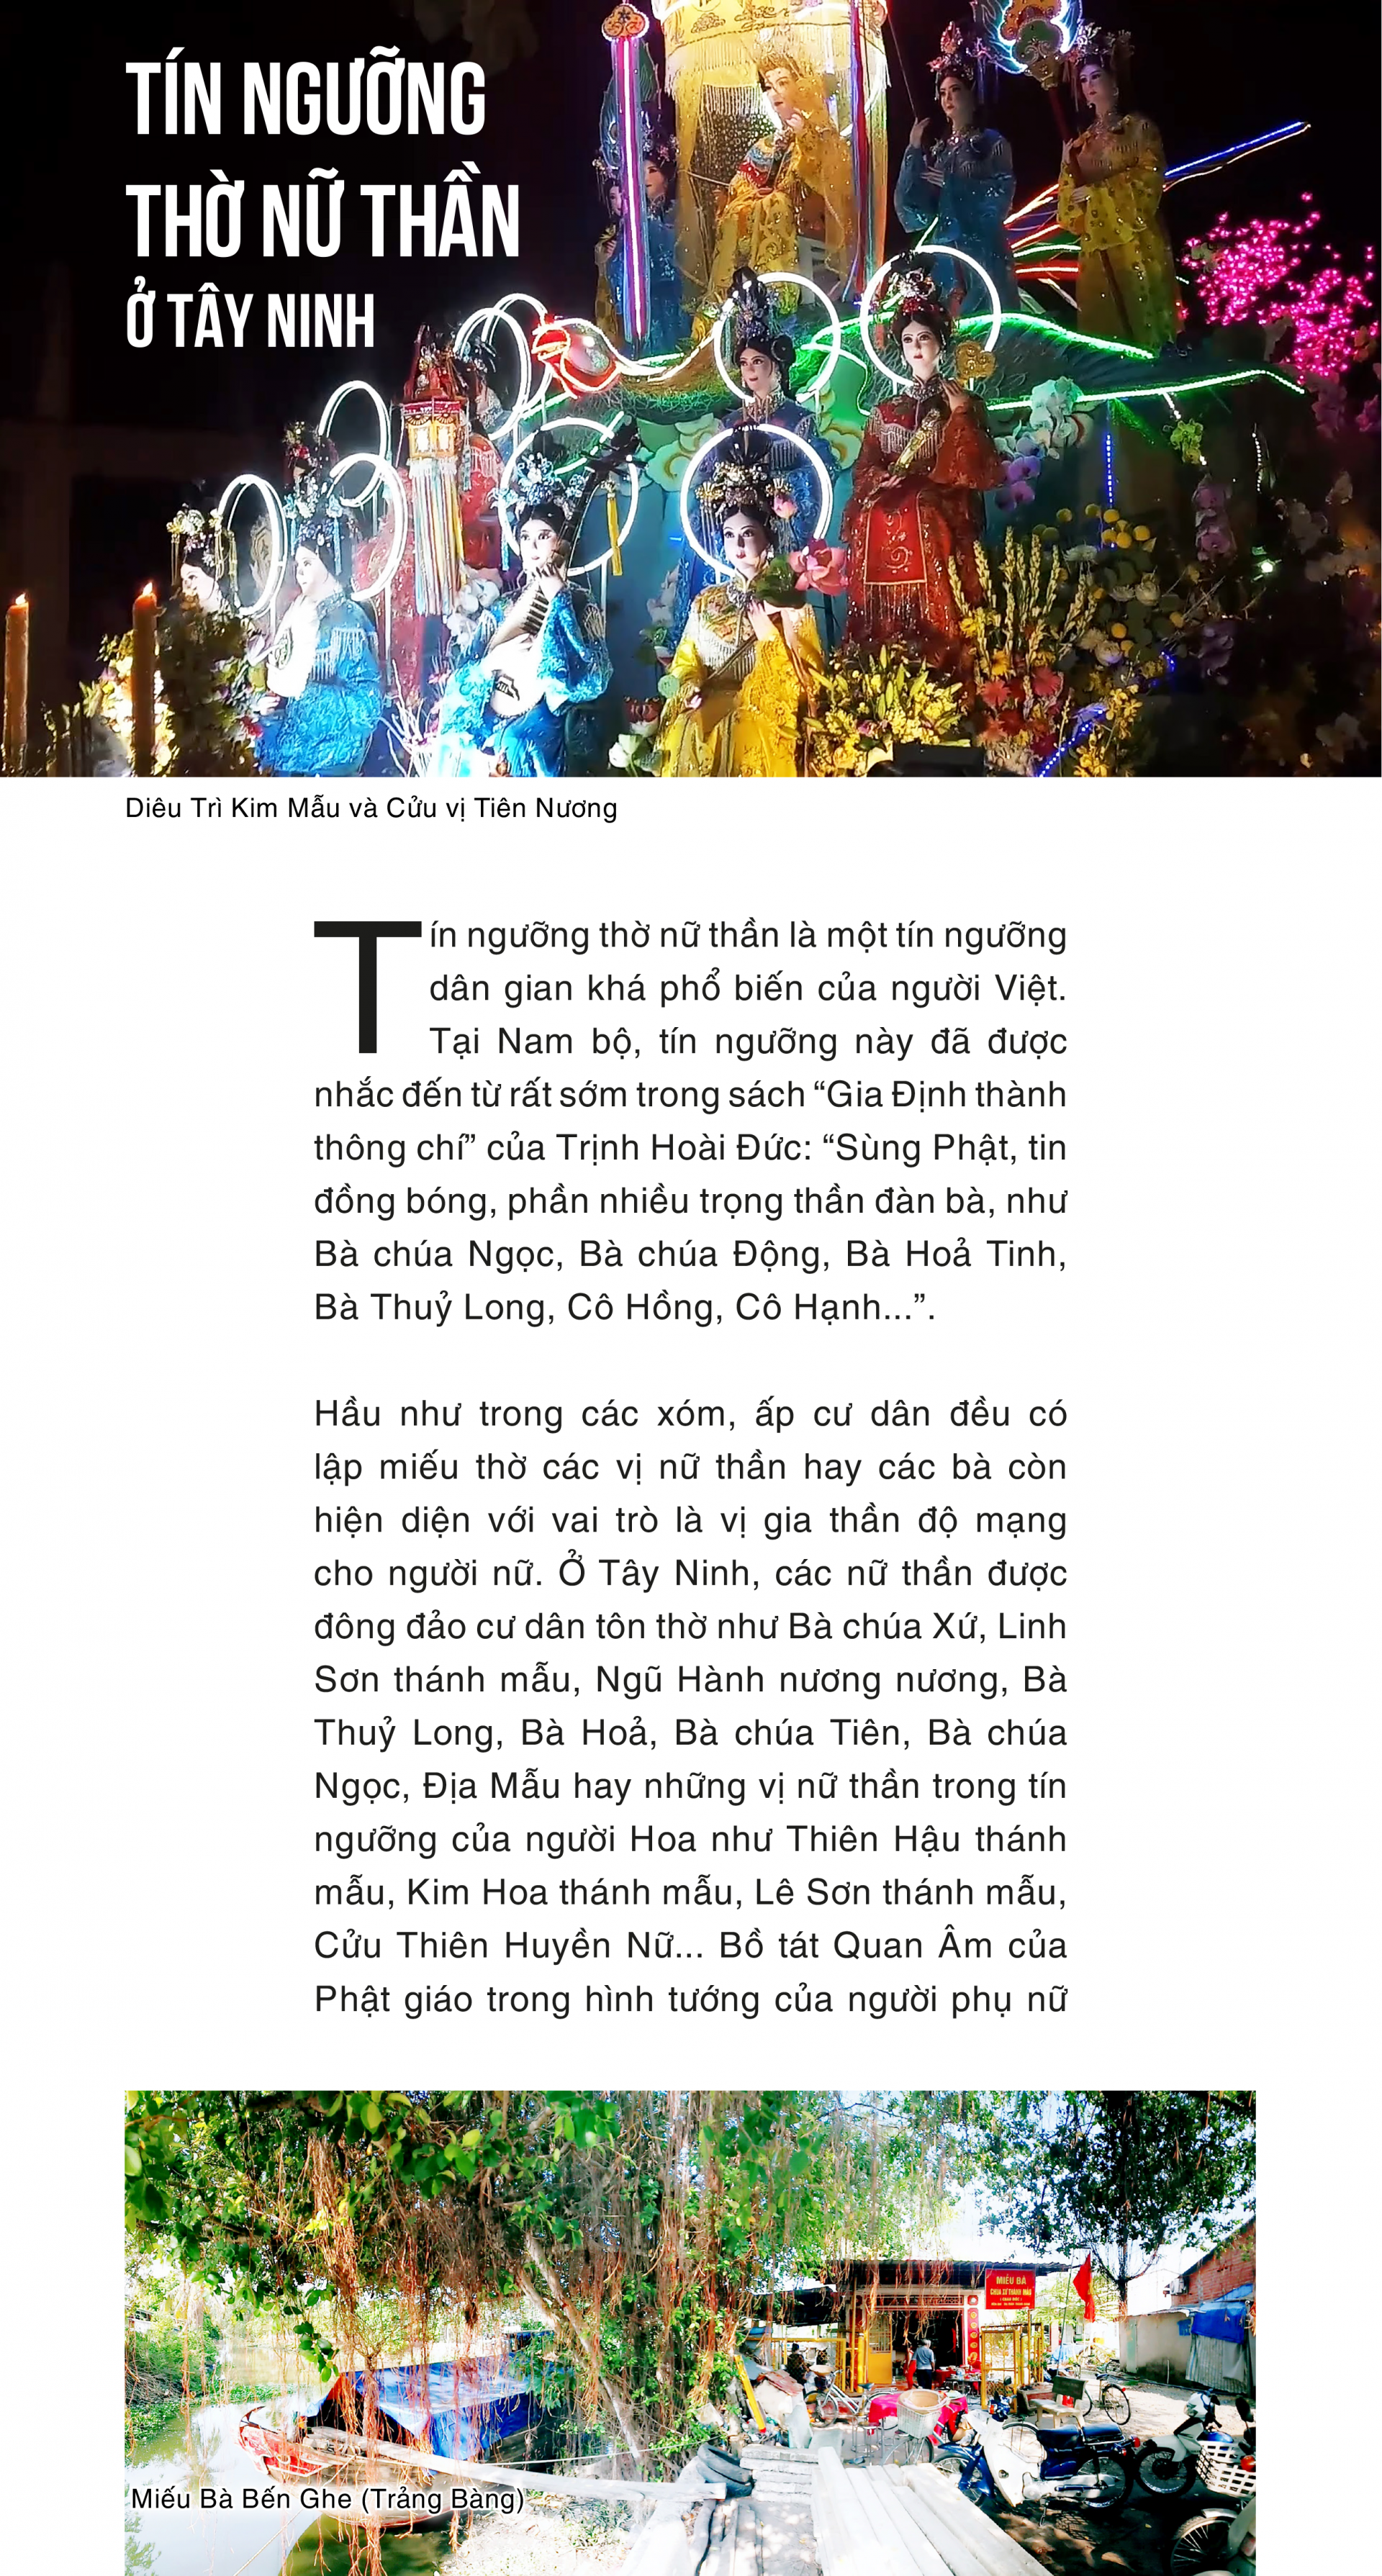 Tín ngưỡng thờ nữ thần ở Tây Ninh